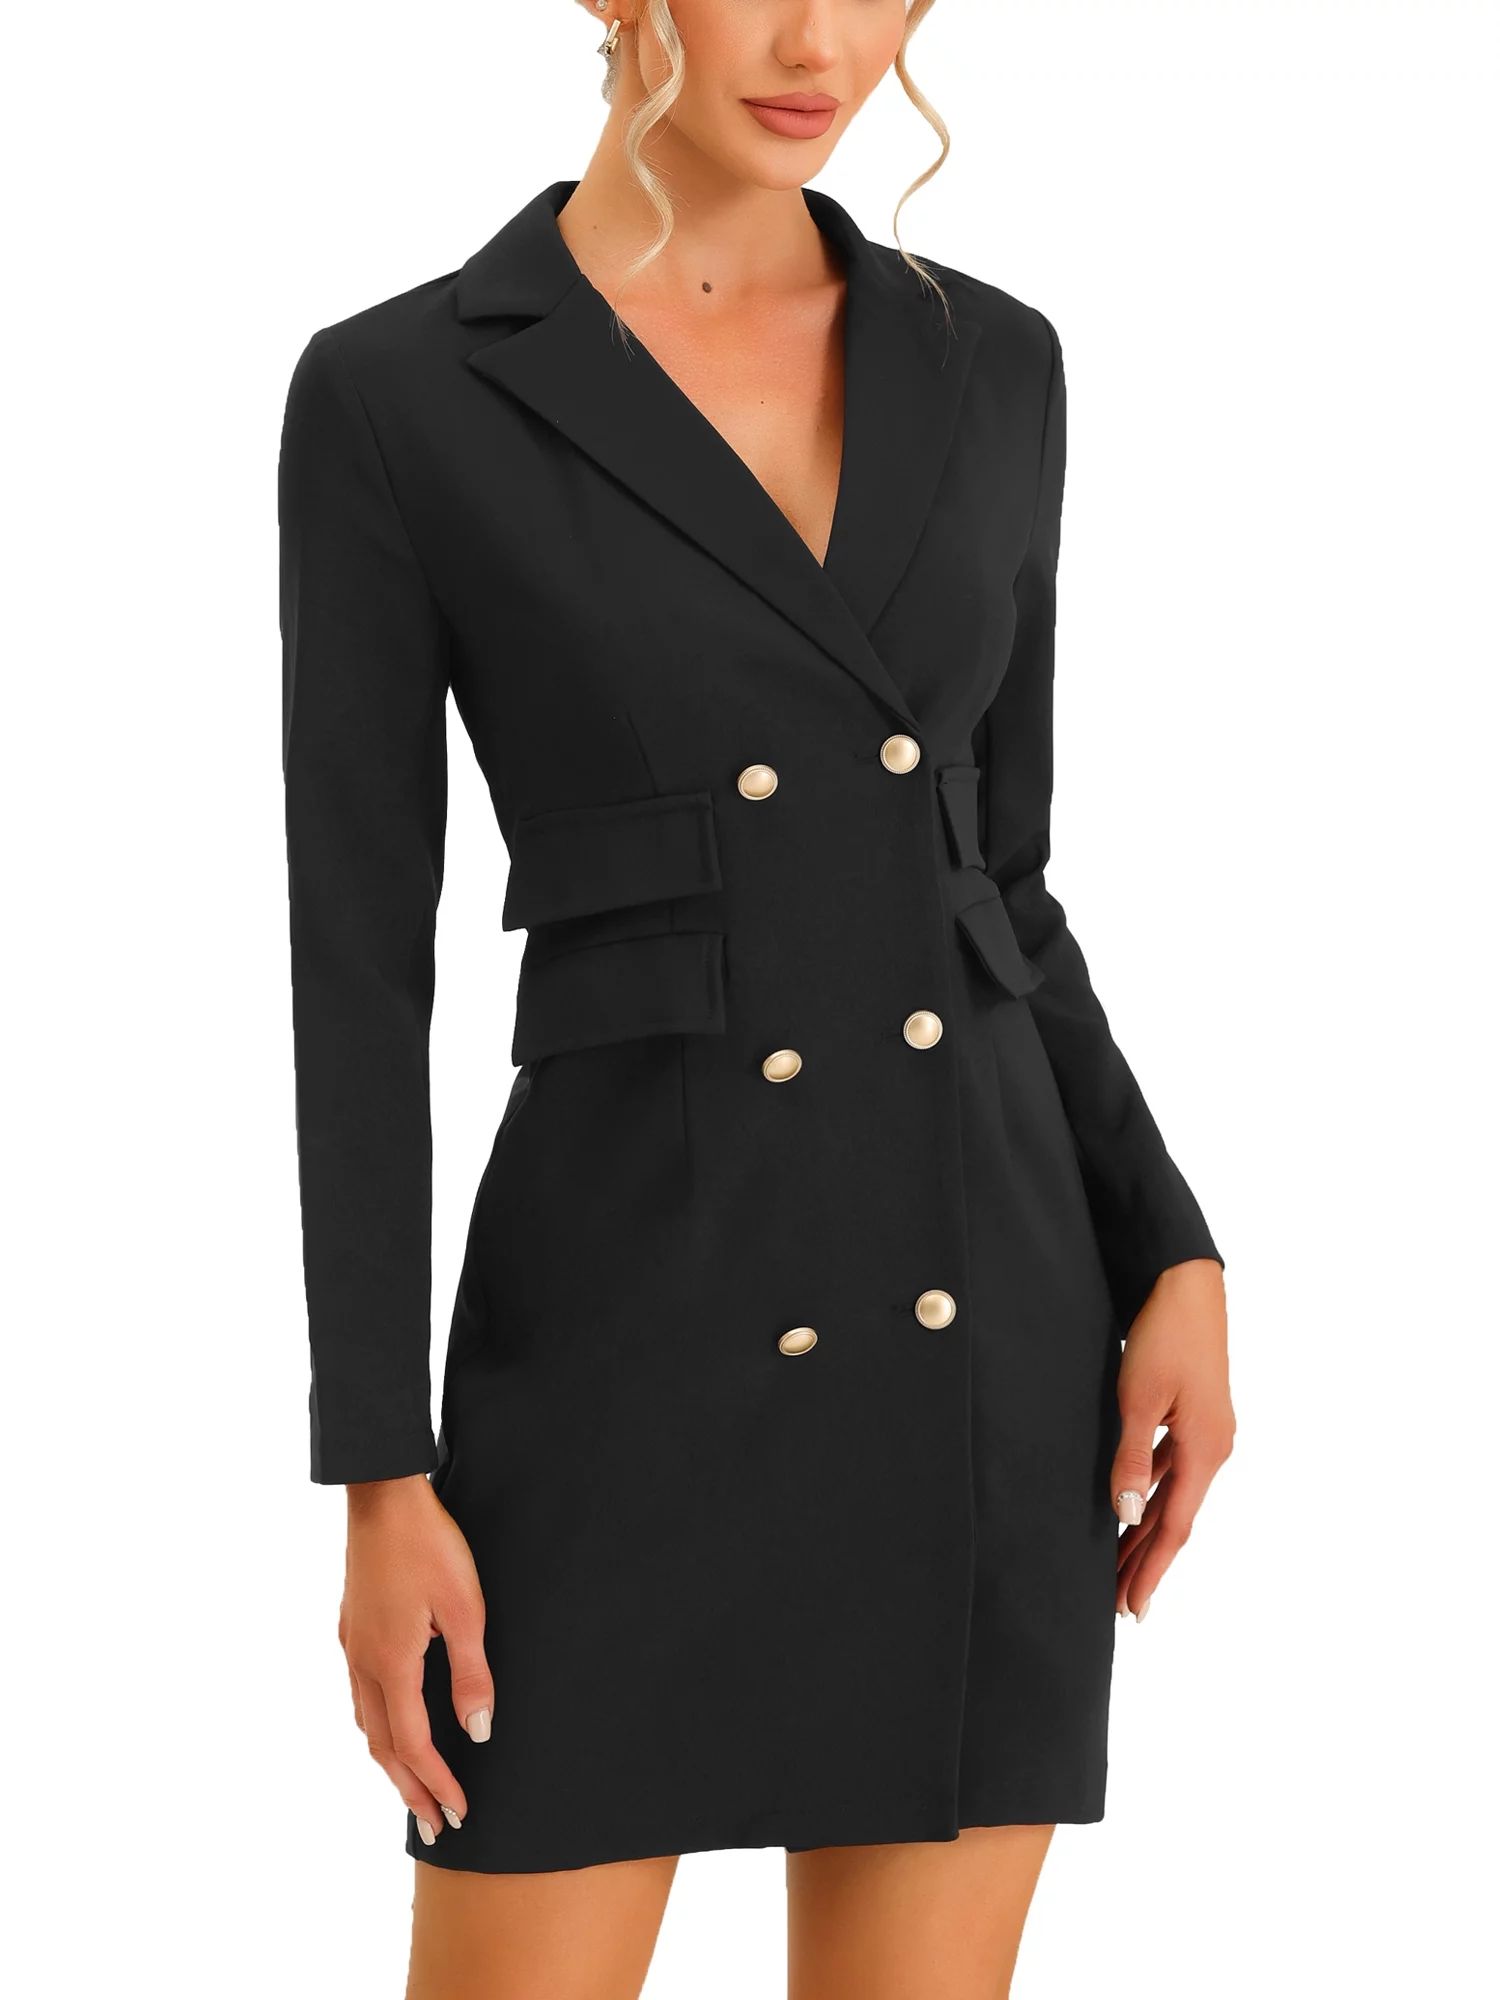 Allegra K Women's Office Elegant Blazer Work Dress with Pockets | Walmart (US)